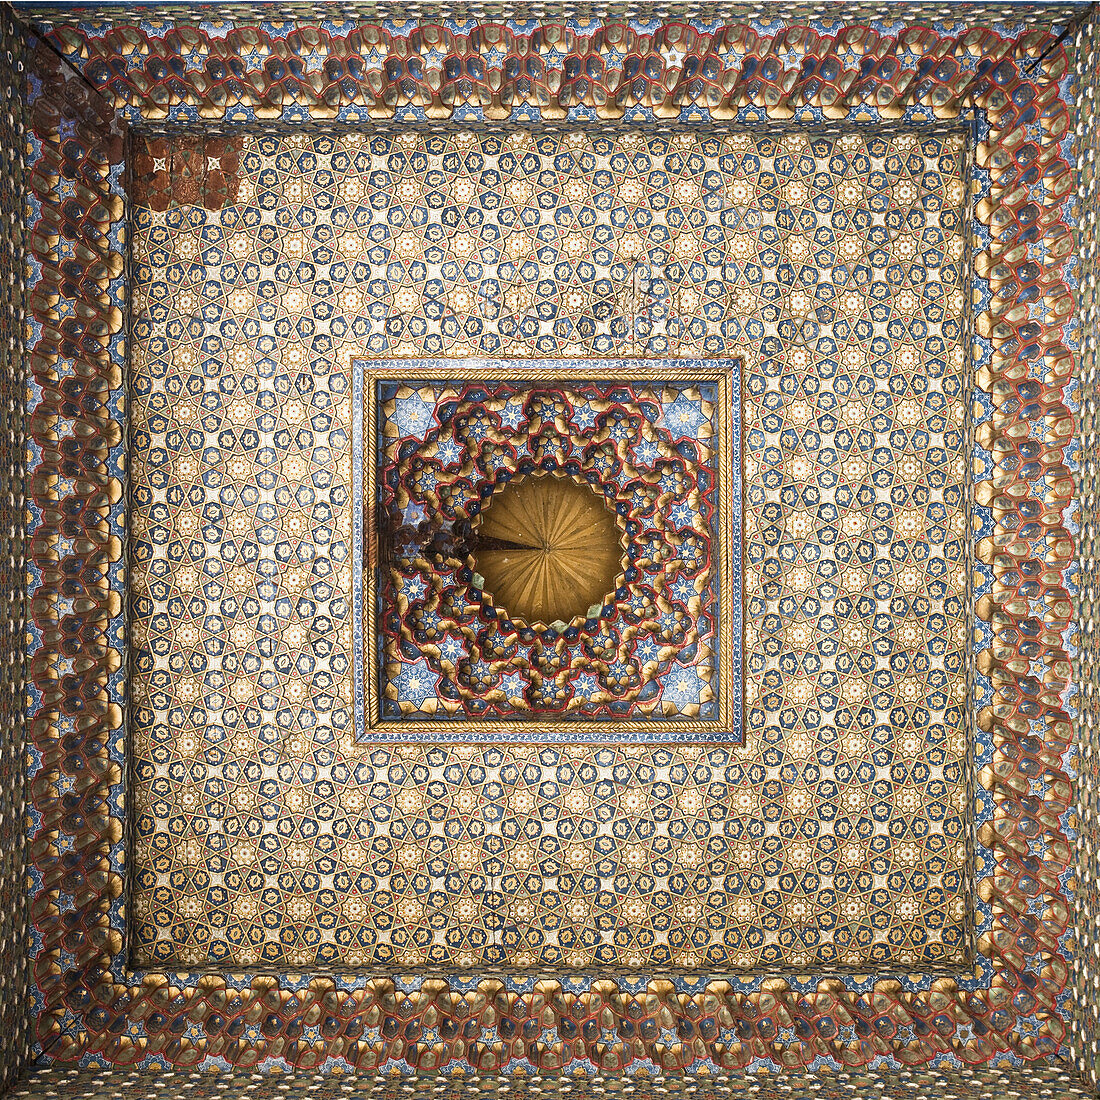 Ornately painted ceiling, Bukhara, Uzbekistan